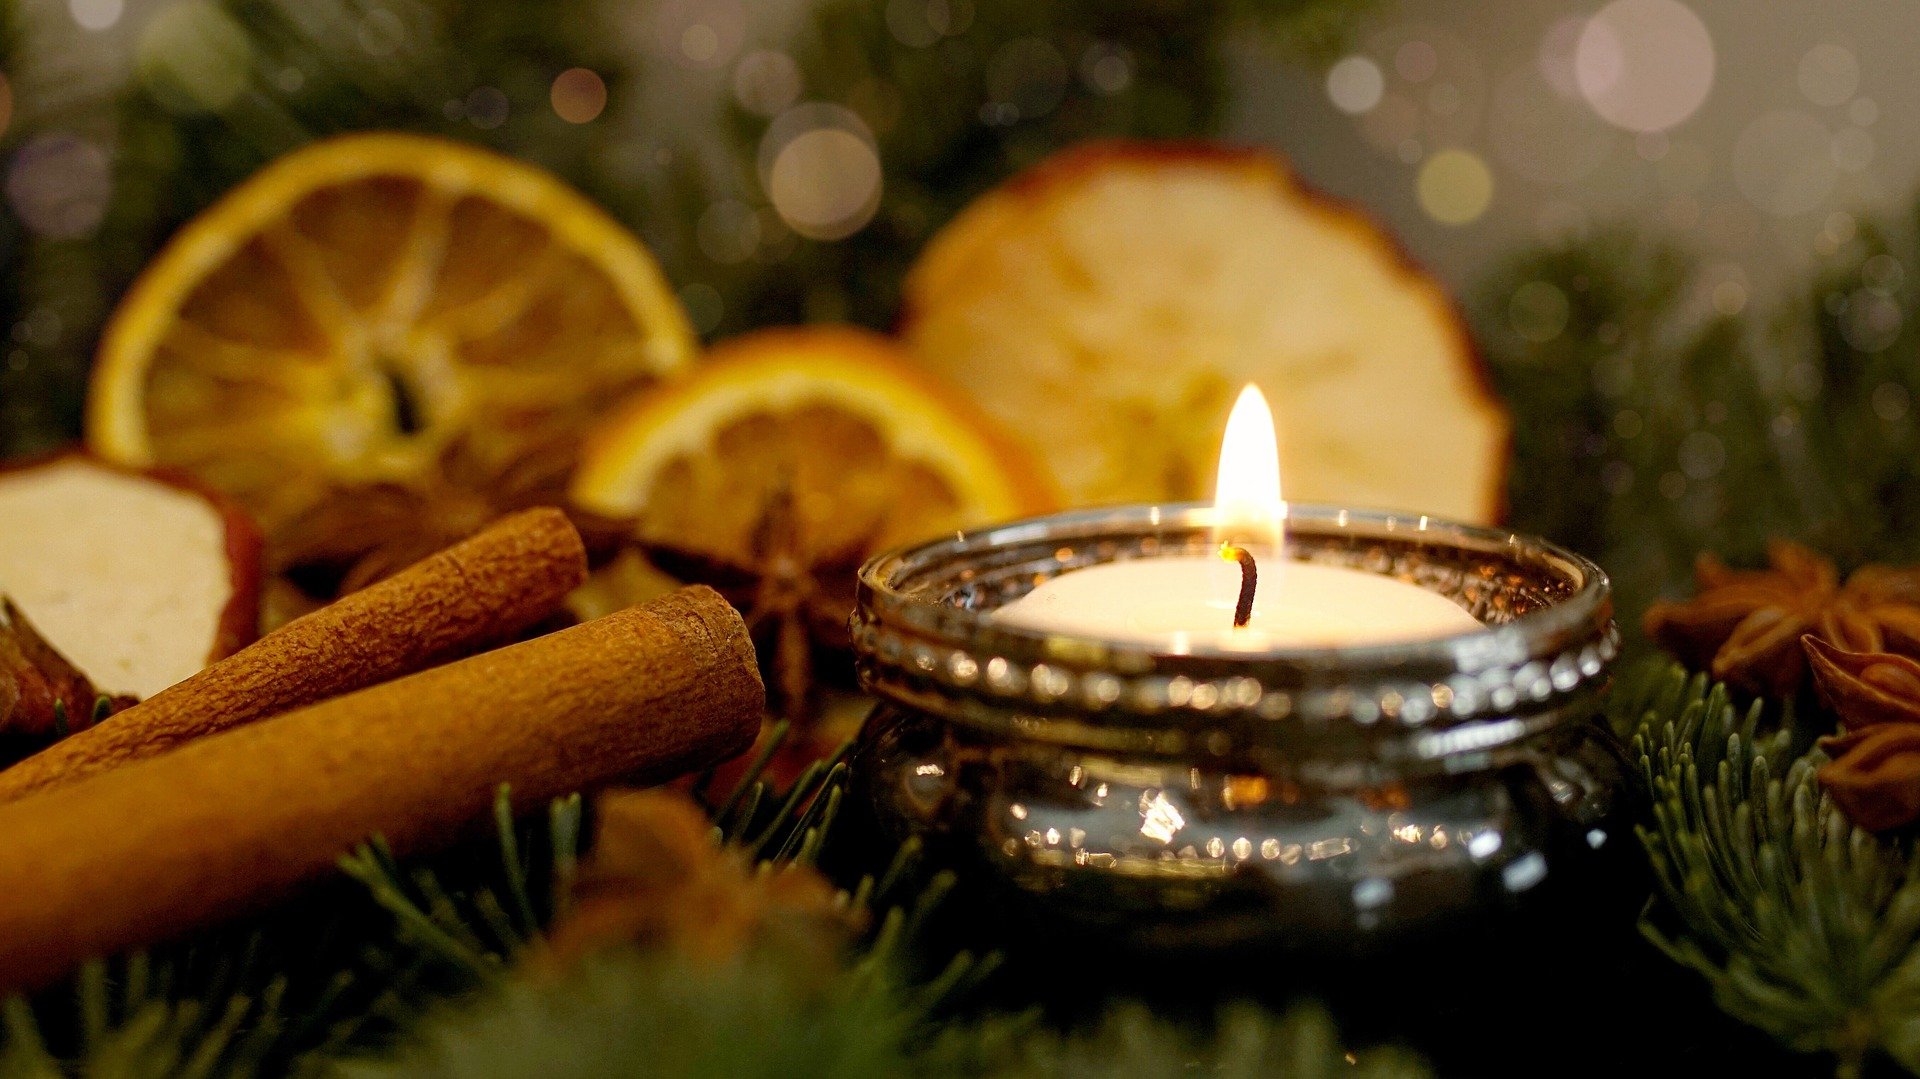 Kerze im Adventsgesteck mit getrockneten Orangen und Zimtstangen